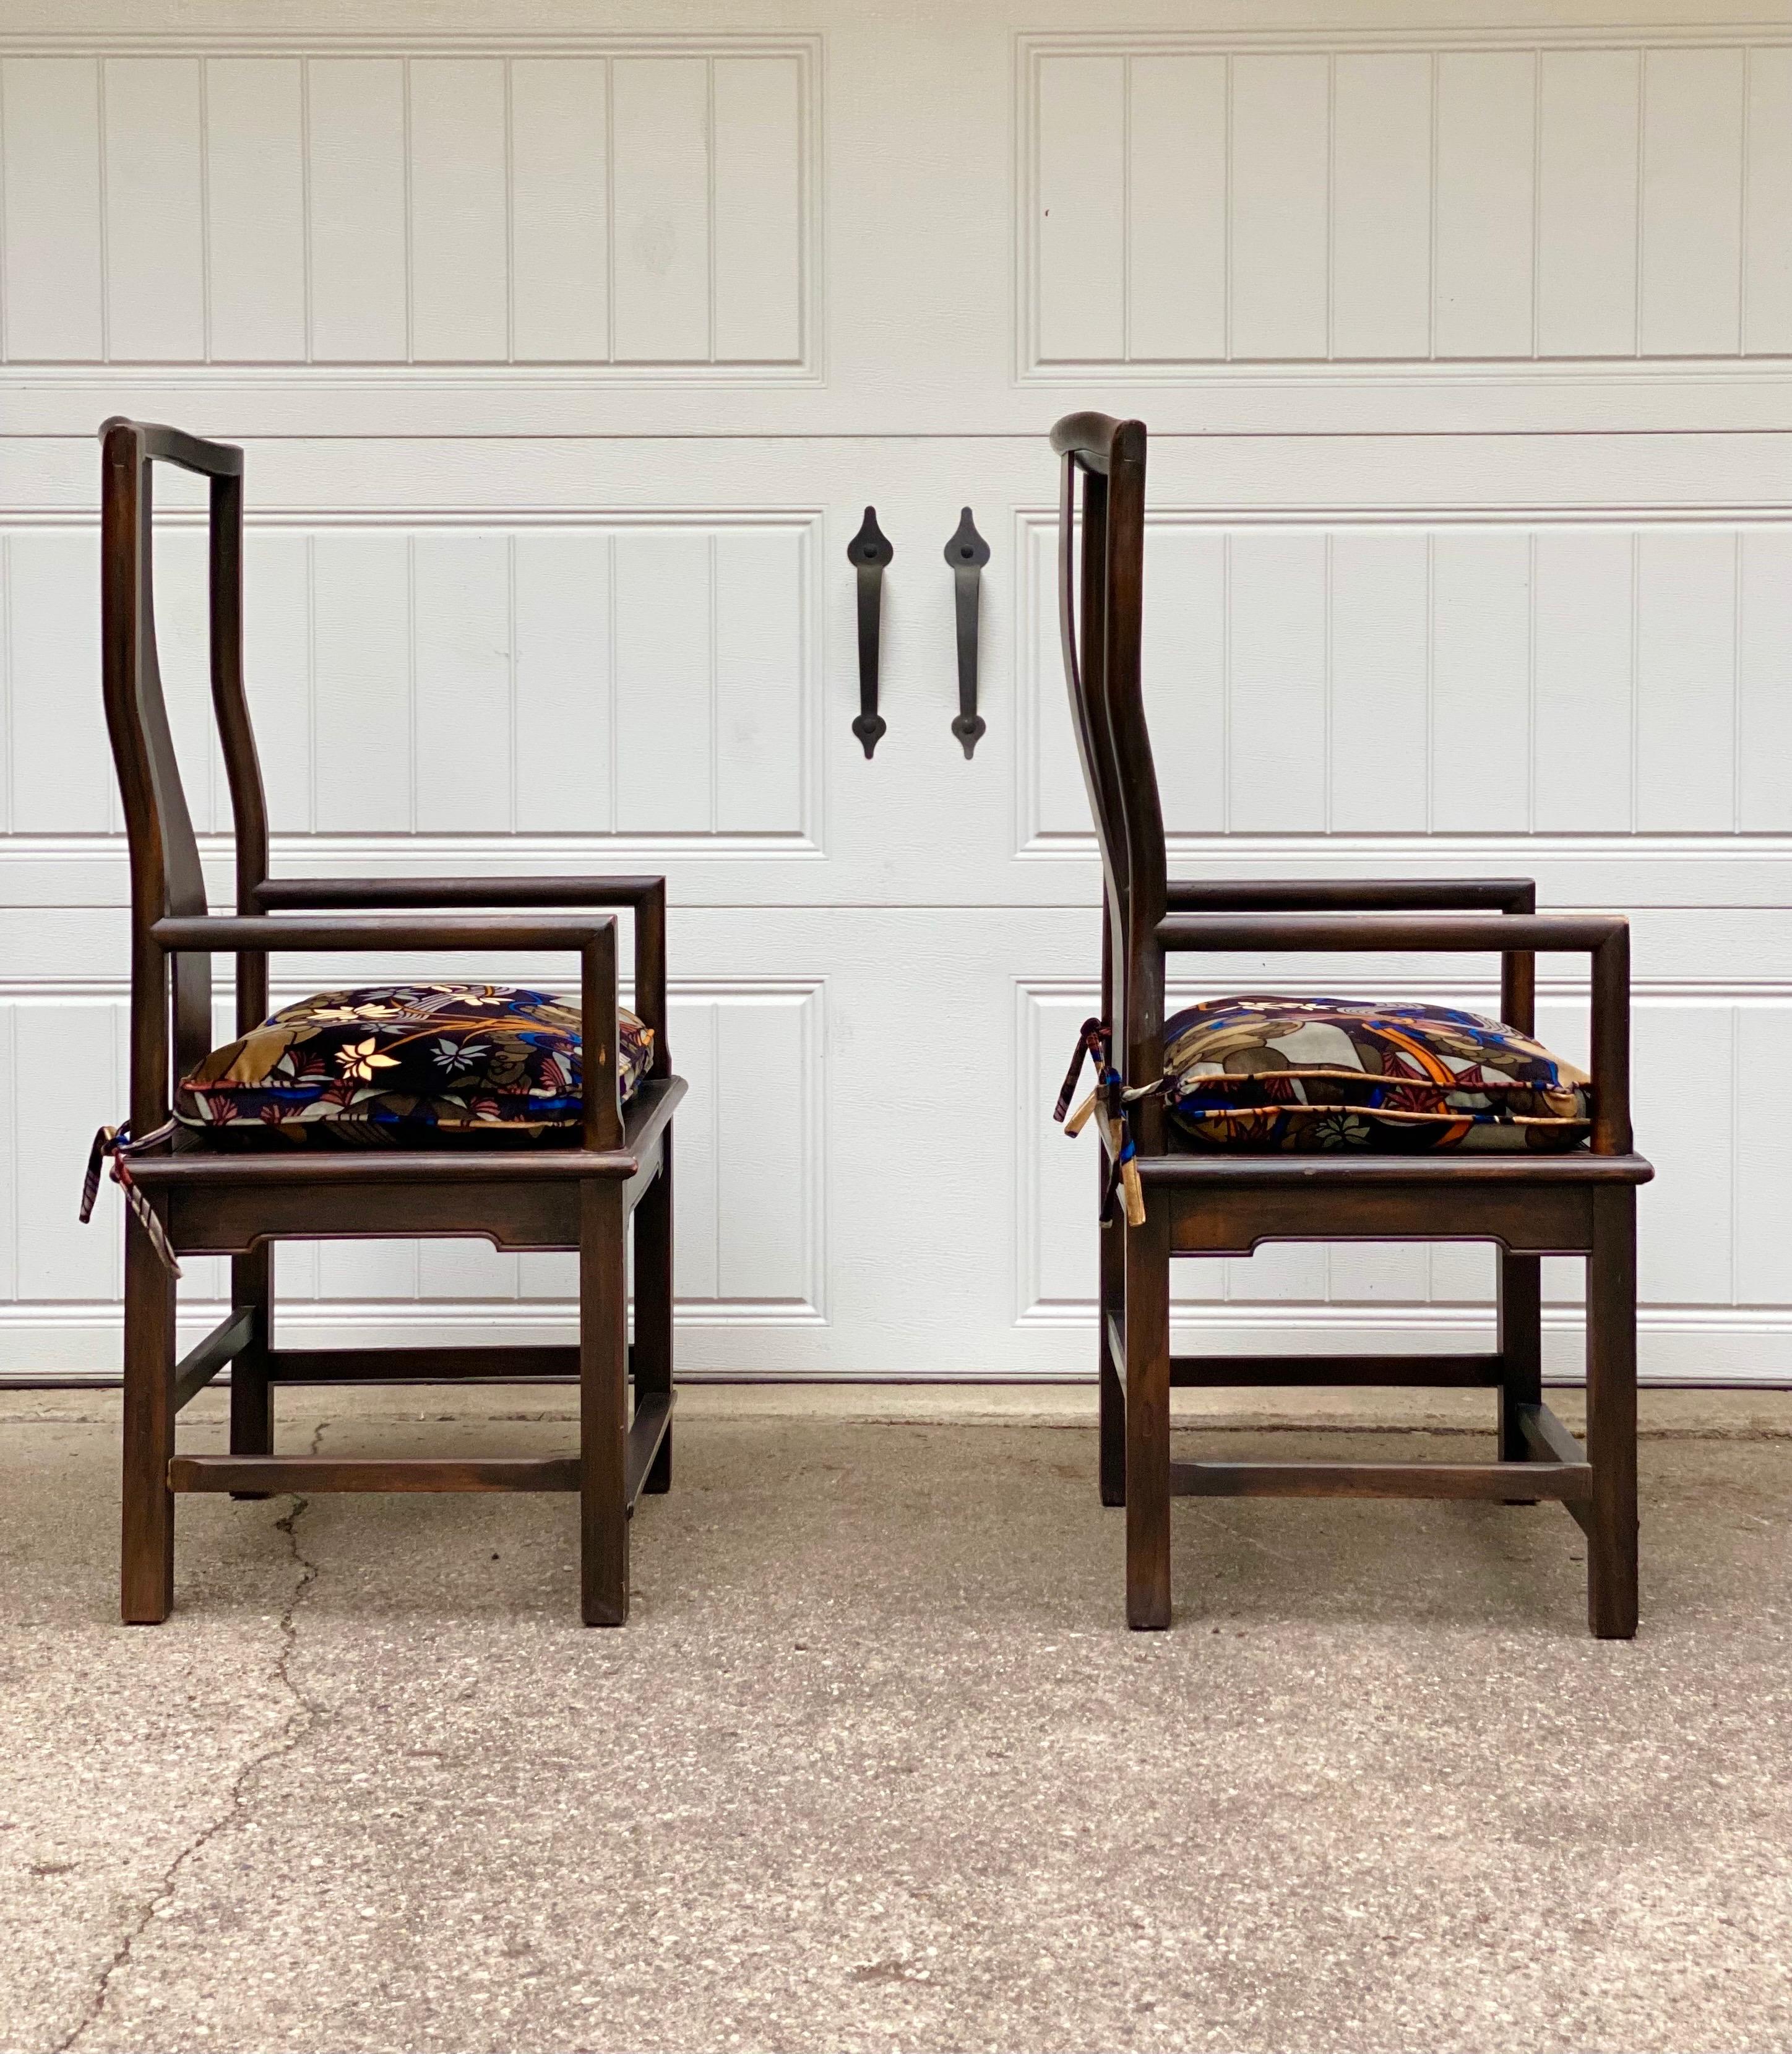 Nous avons le plaisir de vous proposer un ensemble de chaises vintage des années 1960. Cette paire a une apparence gracieuse et élégante, reflétant les sensibilités artistiques que l'on retrouve souvent dans le mobilier asiatique. L'une de leurs